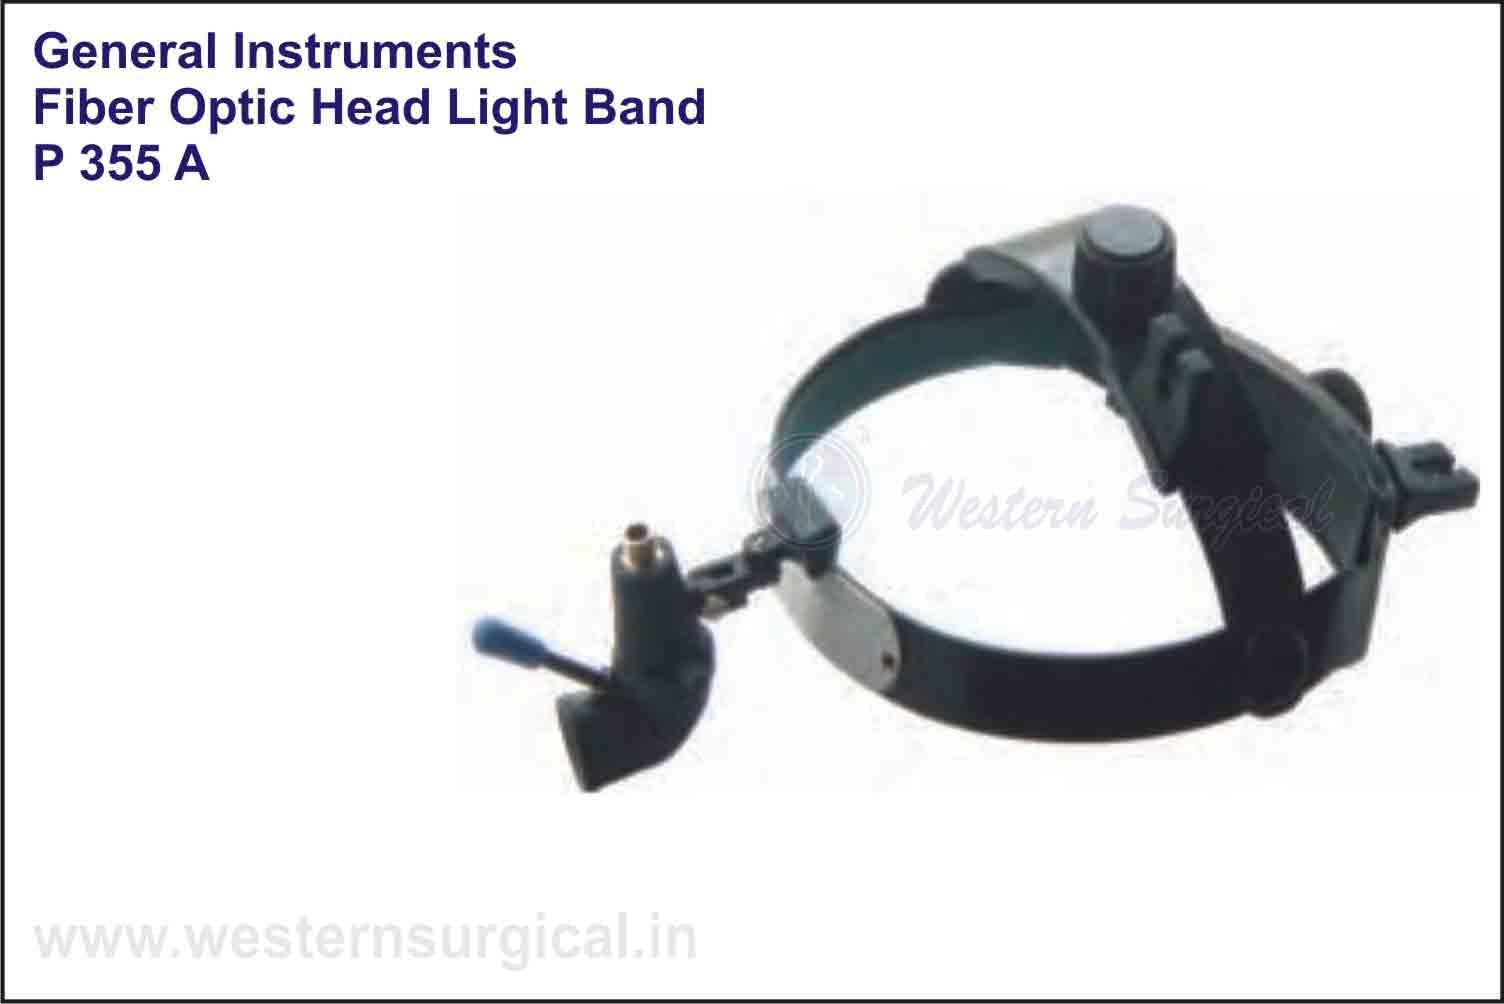 FIBER OPTIC HEAD LIGHT band